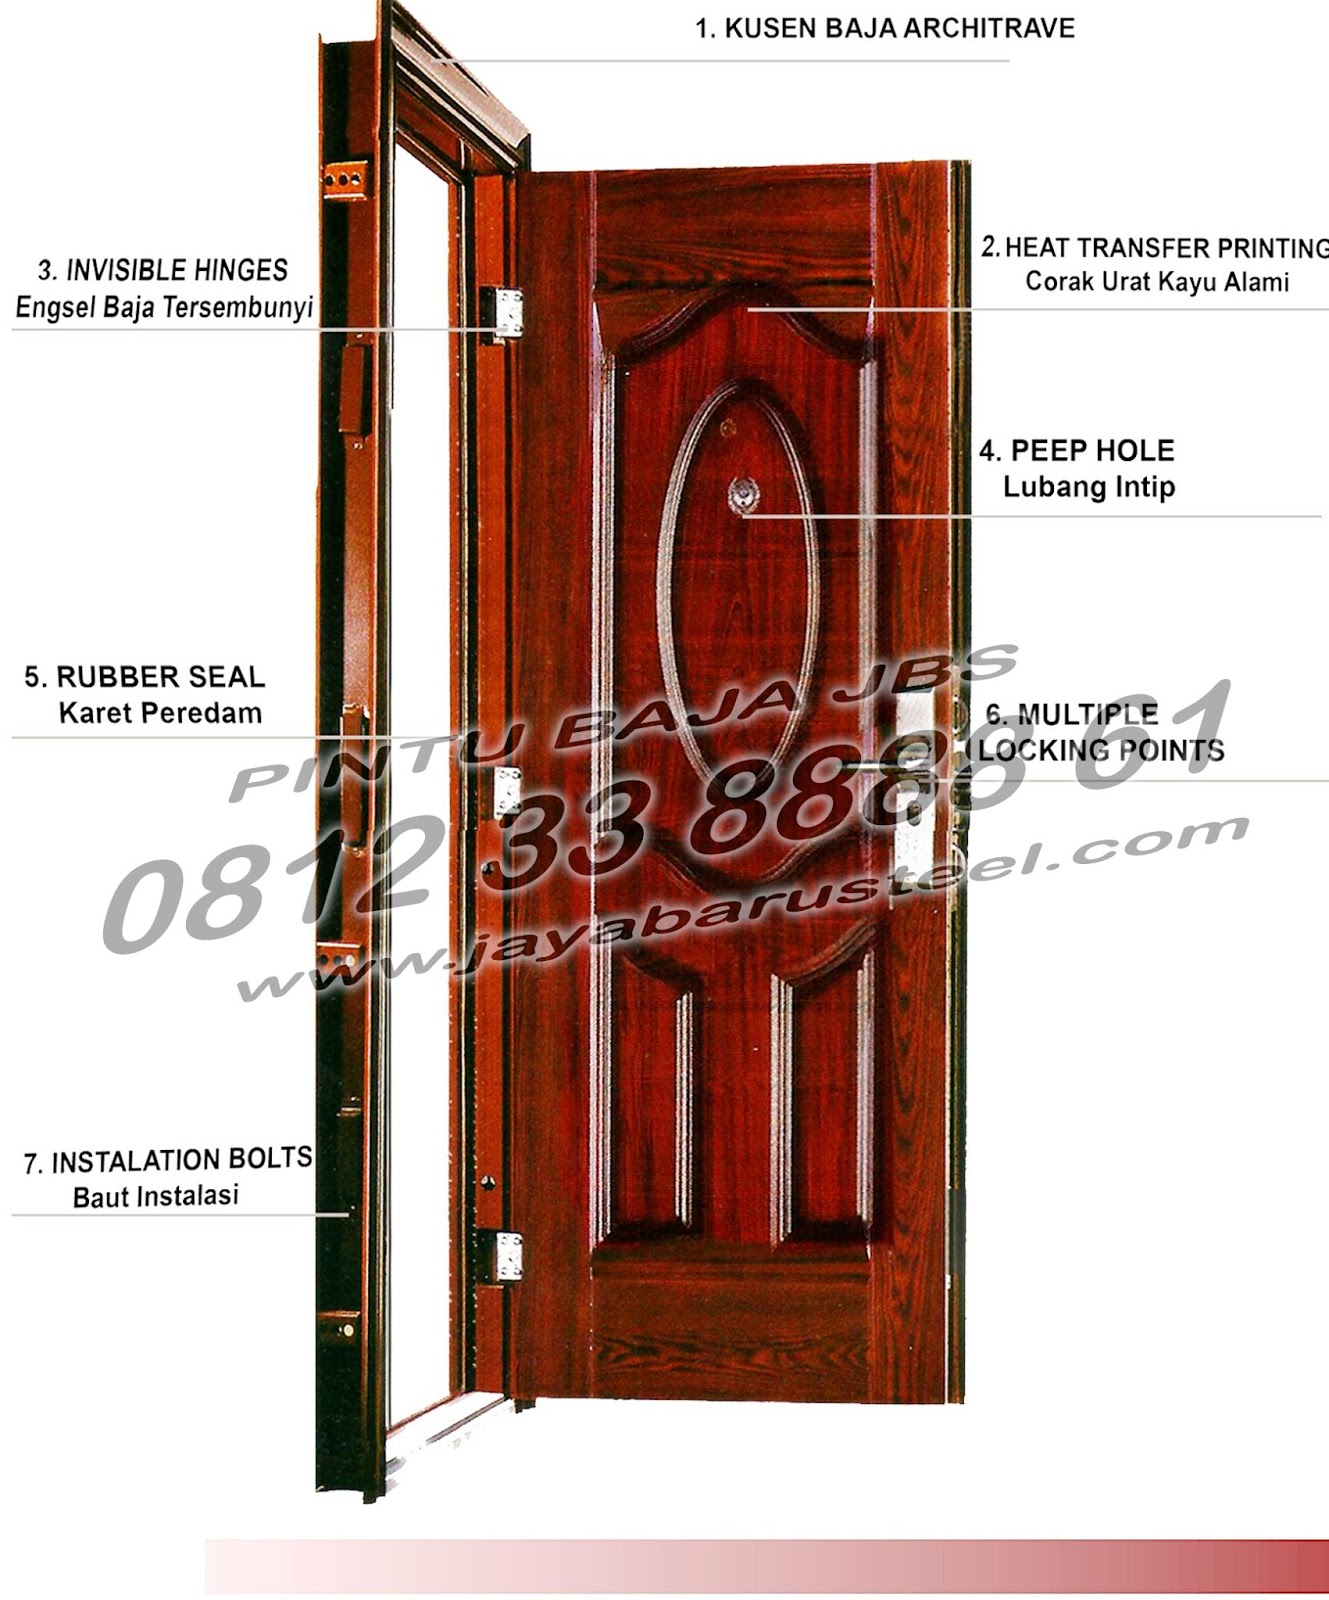 Pintu Rumah Klasik Pintu Rumah Mewah Pintu Panel 081233888861